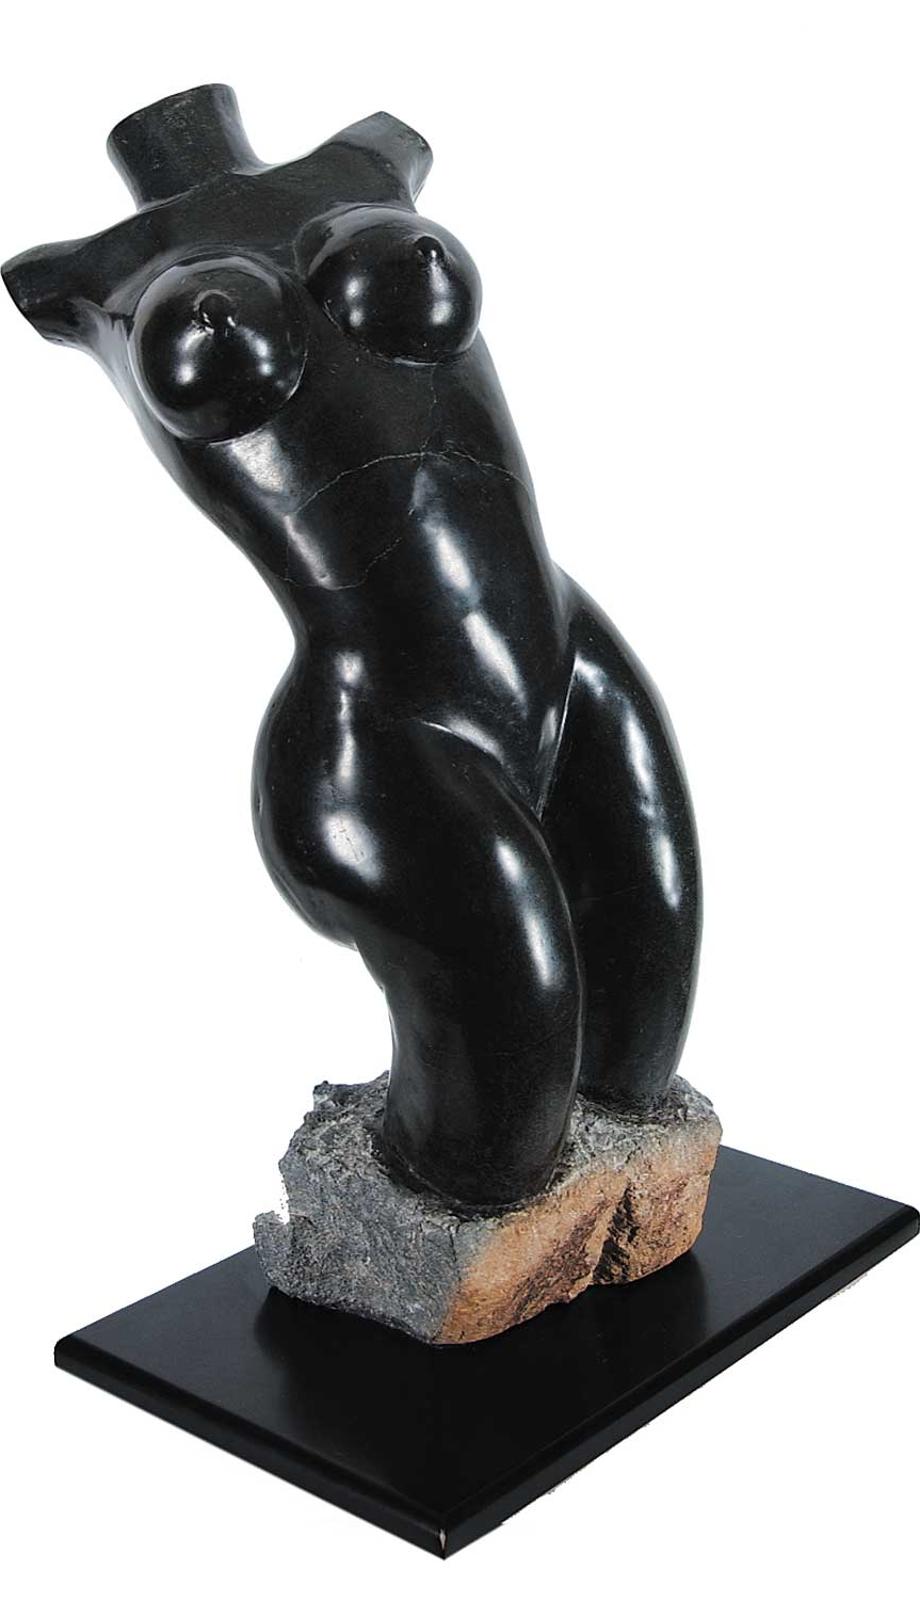 T. Tandi - Untitled - Black Nude Female Figure